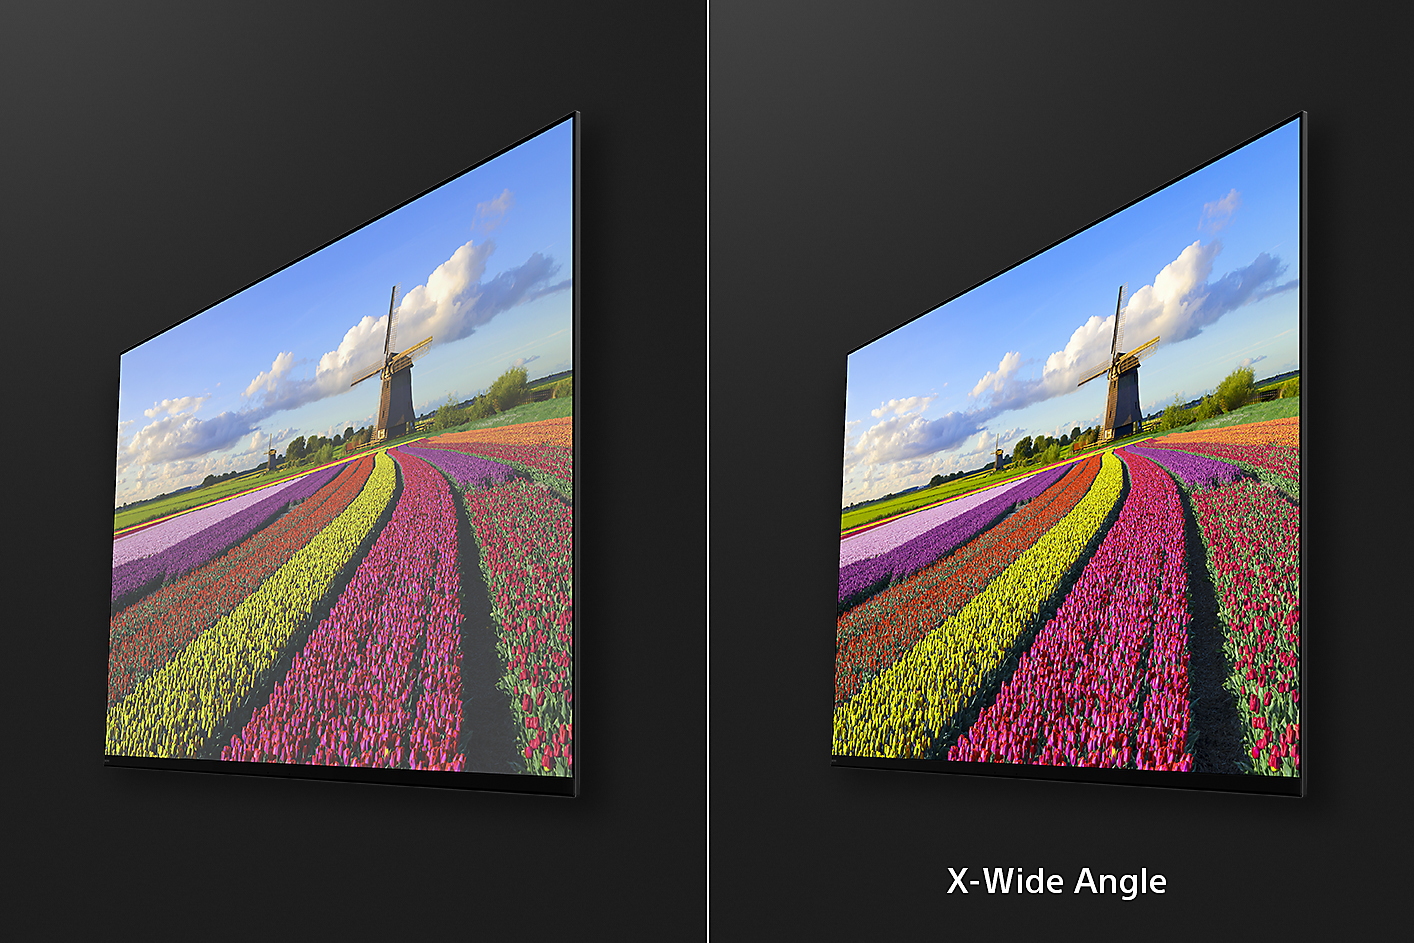 Deux captures d'écran inclinées de fleurs dans un champ avec une image à droite montrant les avantages de X-Wide Angle